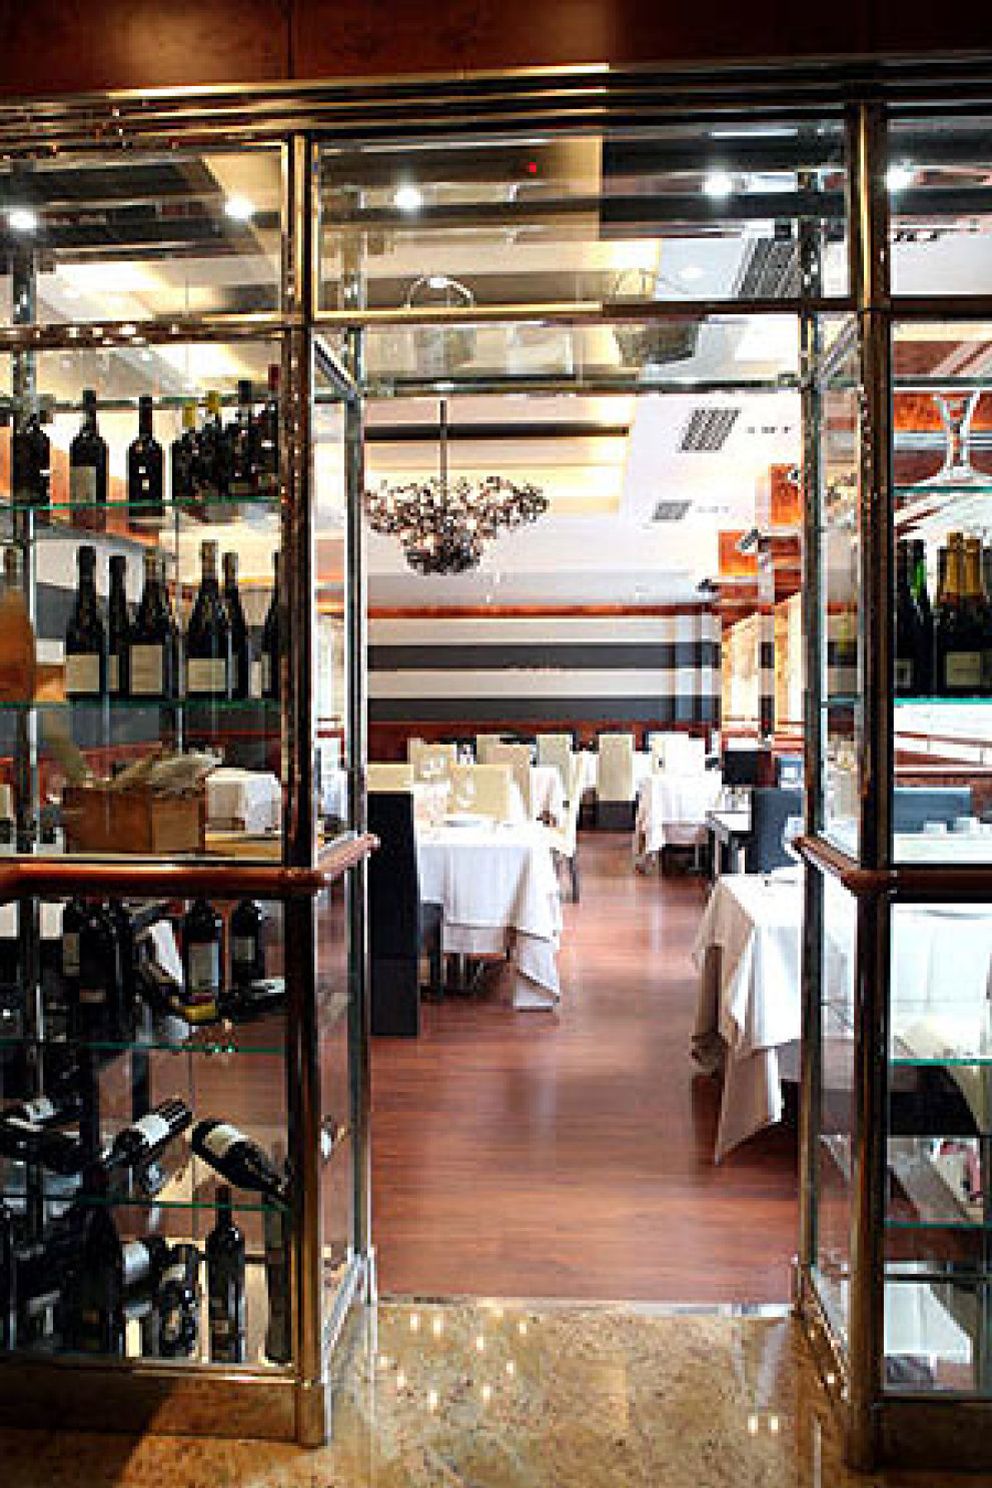 Foto: Piñera, la legitimidad del restaurante burgués contemporáneo